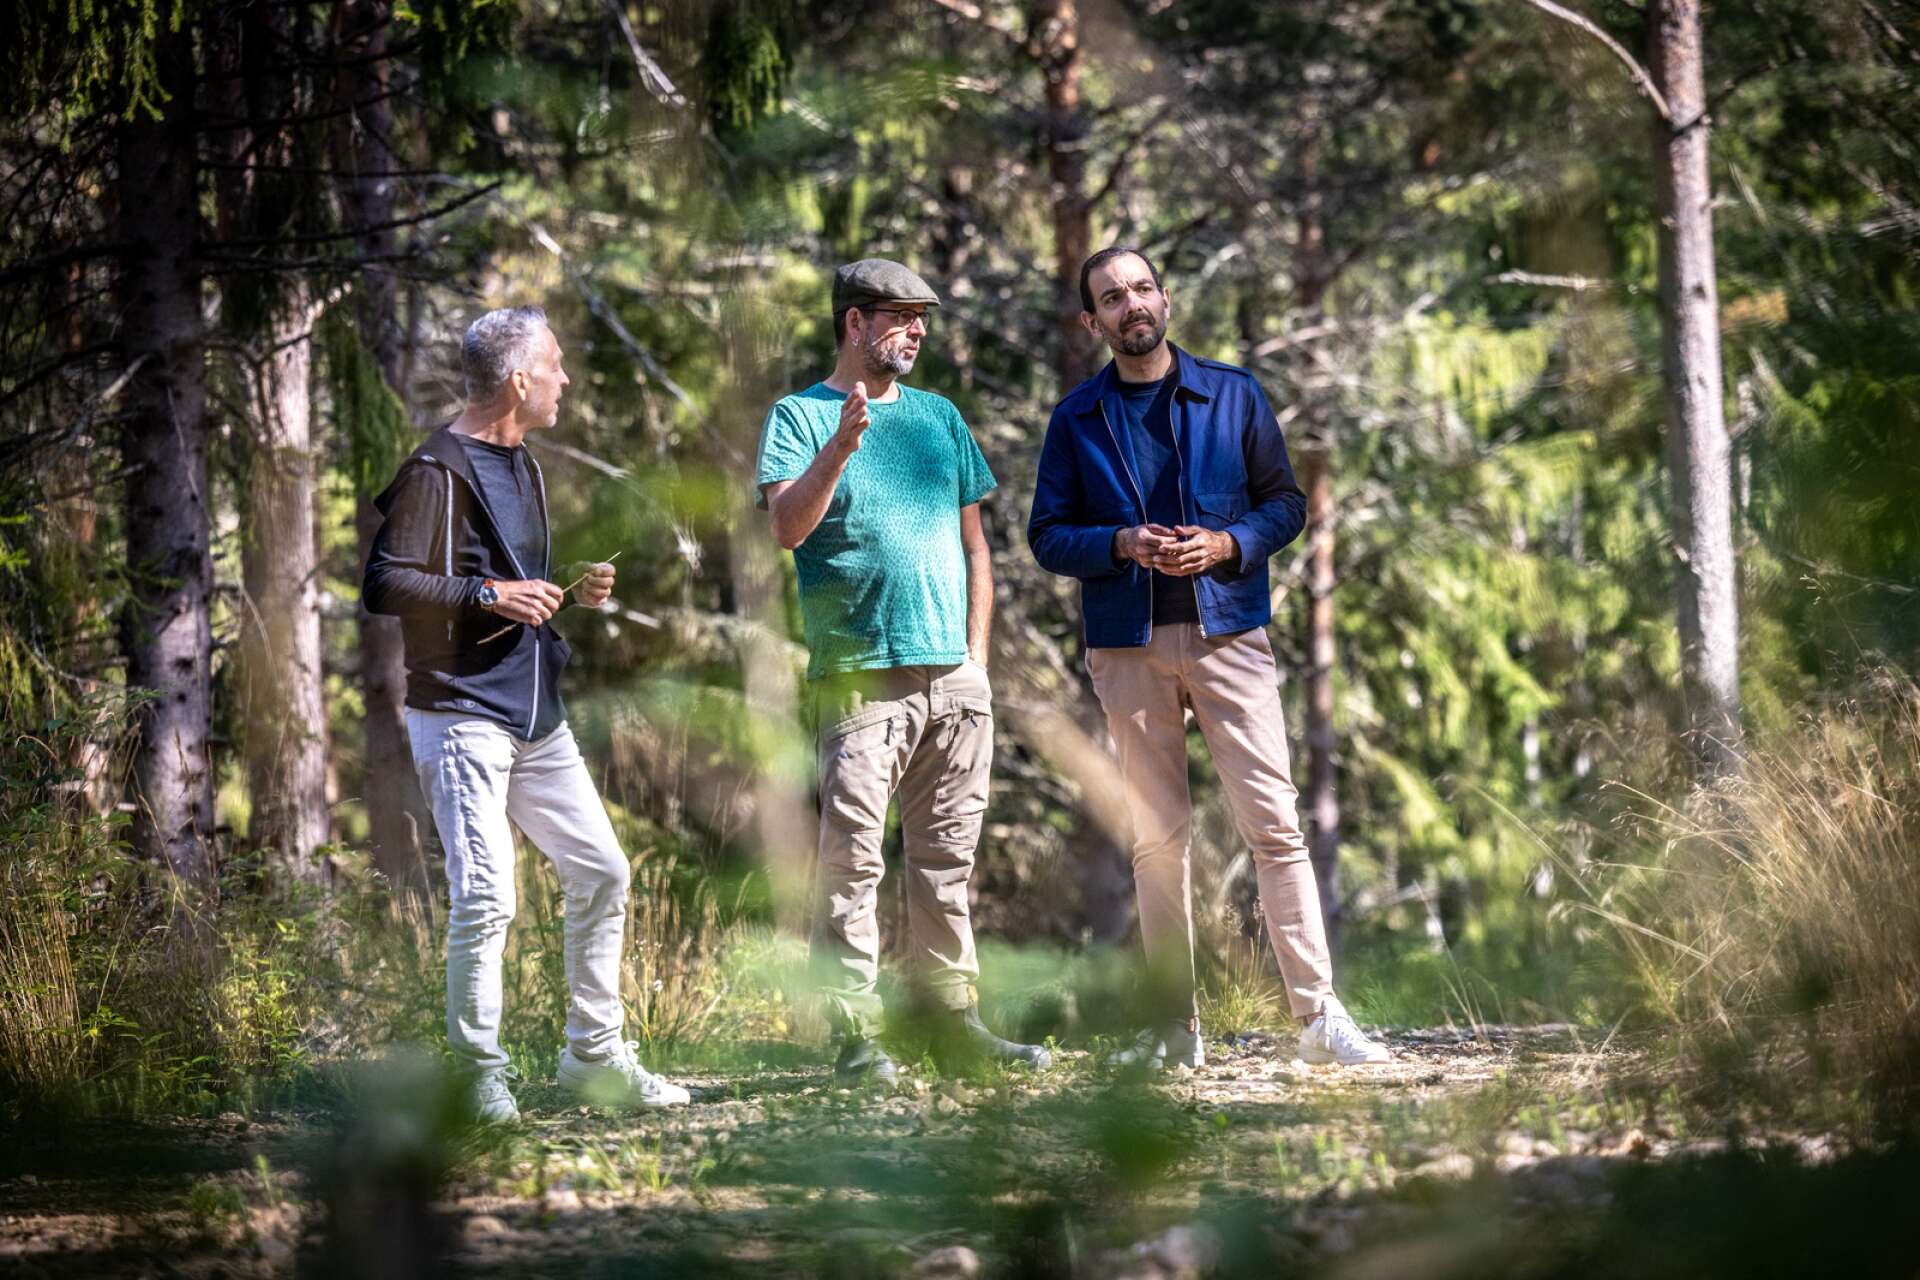 Anders Bengtsson i Snårstad (i mitten) är skogsbrukare i fjärde generationen. Han skulle inte göra något som riskerar kvaliteten och naturvärdena i sin skog, menar han.